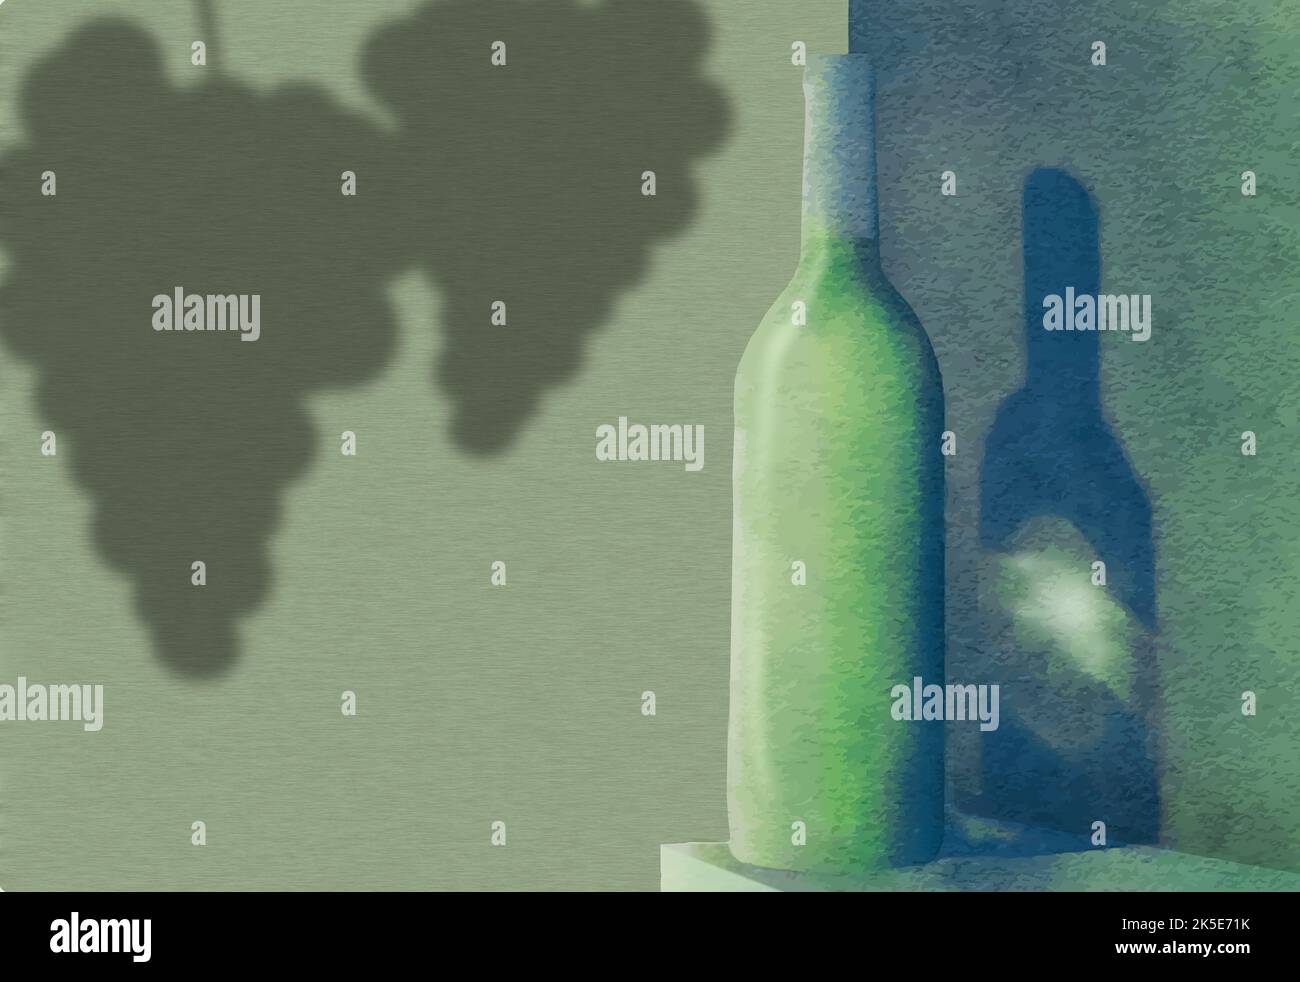 Une bouteille de vin blanc projette une ombre fine dans cette illustration numérique à l'aquarelle. Banque D'Images